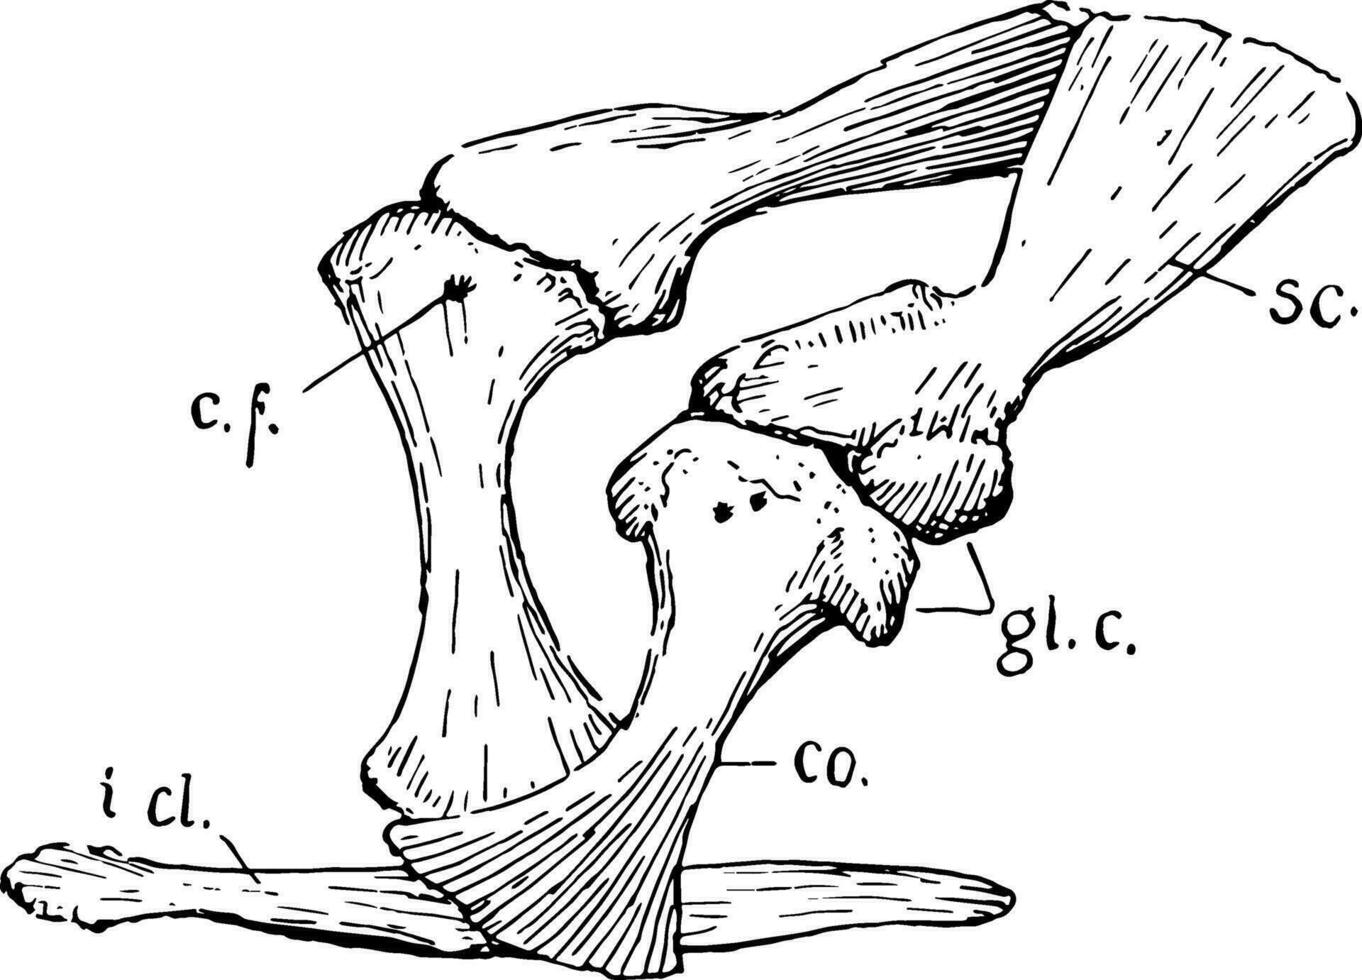 cocodrilo pectoral faja, Clásico ilustración 35365158 Vector en Vecteezy